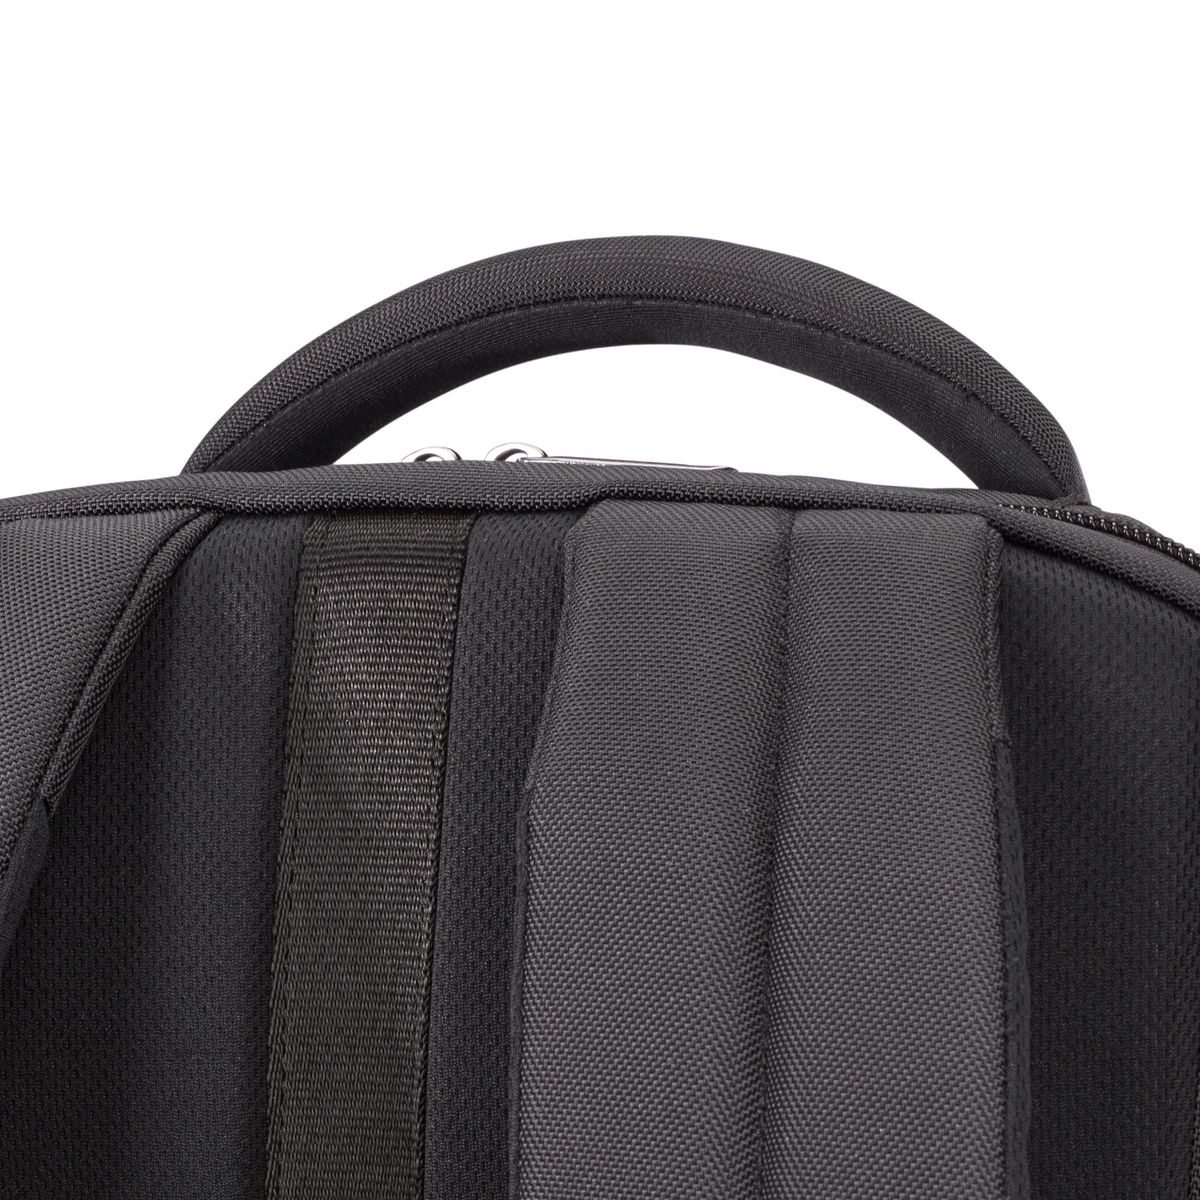 Case Logic Propel Backpack TSA backpack